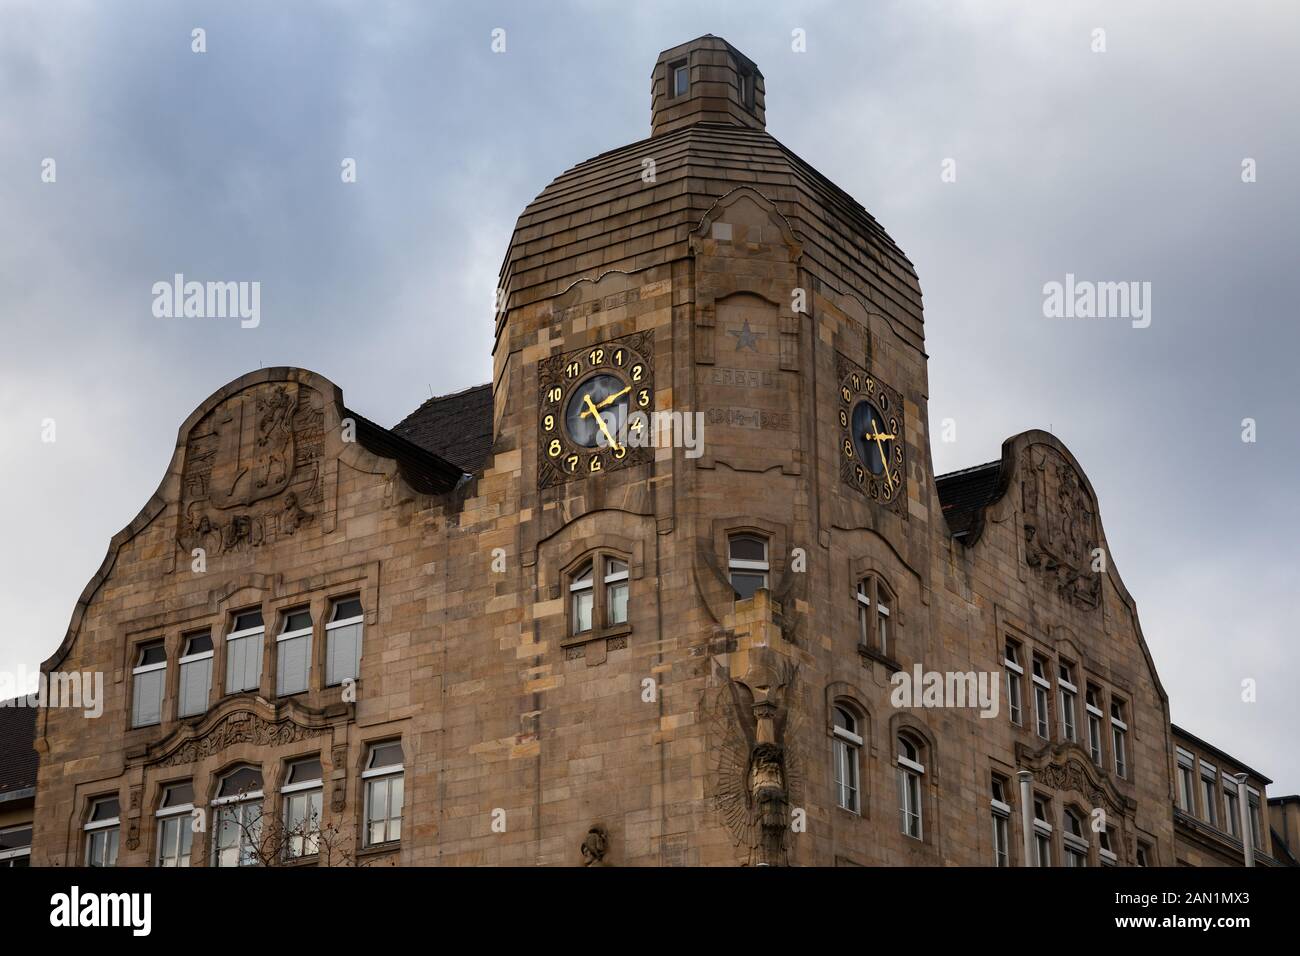 Friedrich-List-scuola sta lavorando in un vecchio jugend - Edificio di stile nel centro di Mannheim. Il vecchio orologio è un dettaglio prominente nella facciata dell'edificio. Foto Stock